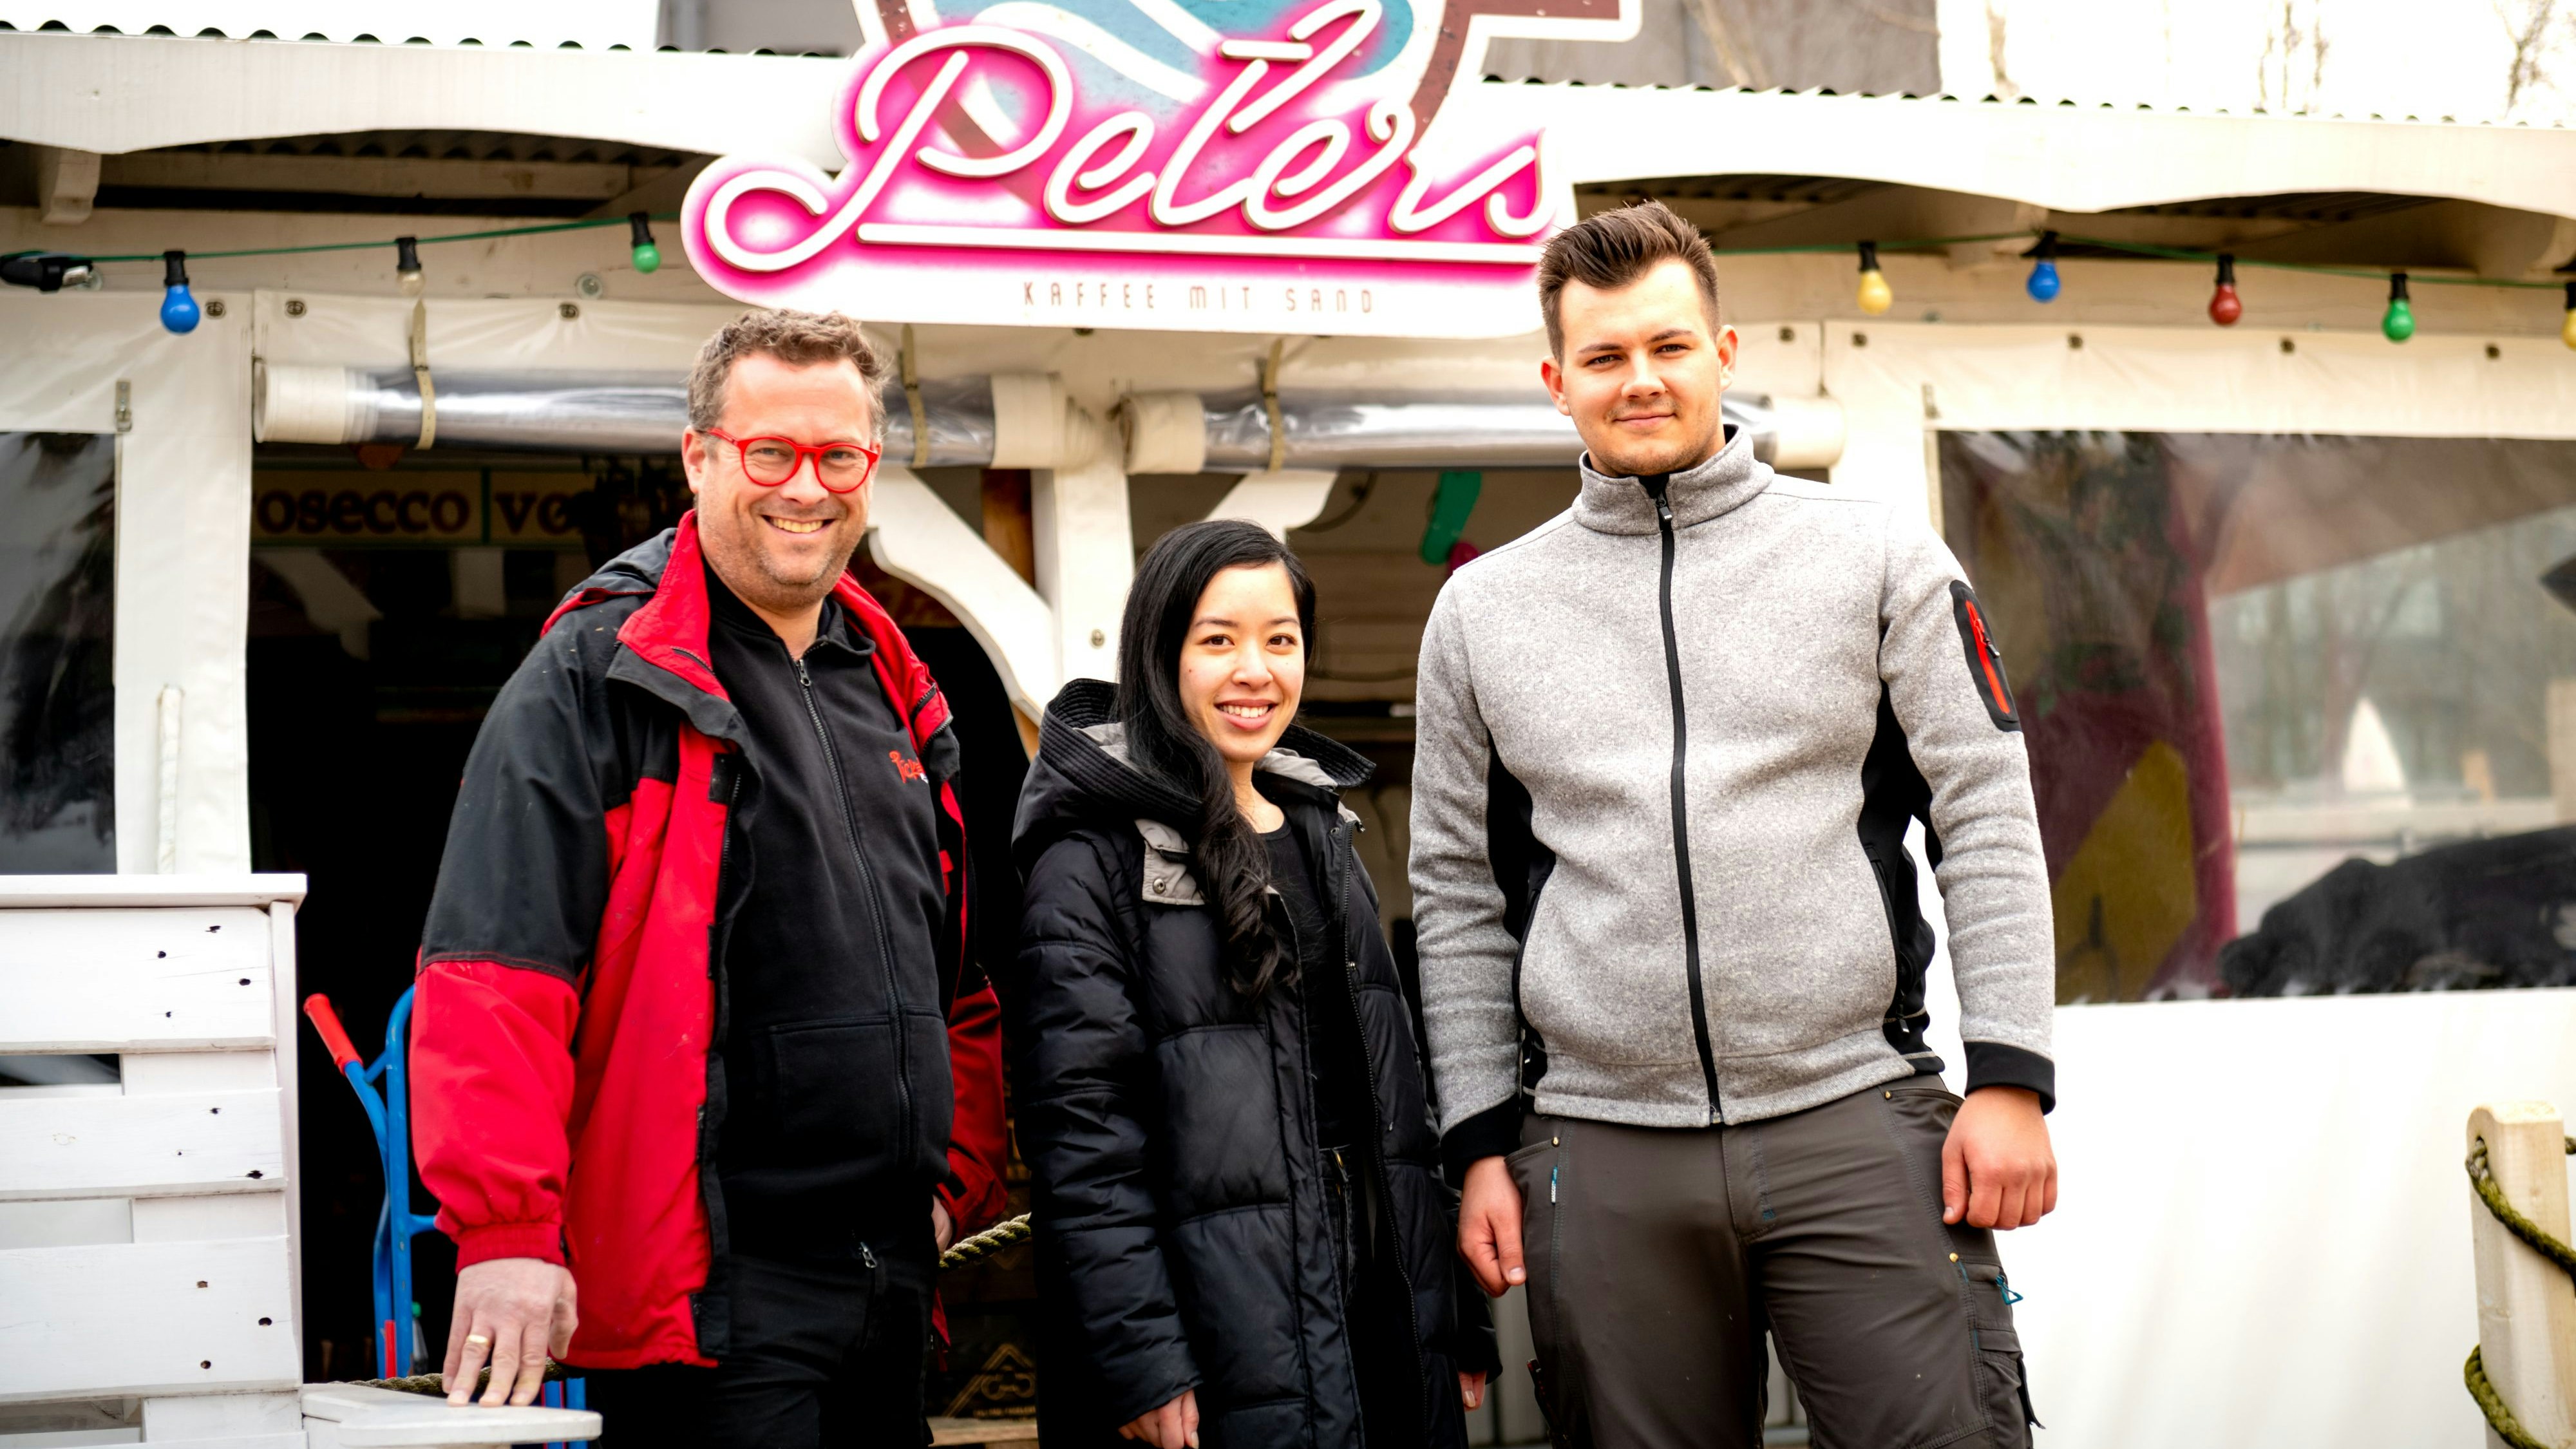 Betreiberwechsel: (von links) Stefan Surmann und die neue Beachbar-Chefin Trang Dinh übernehmen den Standort von Peter Stratmann. Foto: Chowanietz